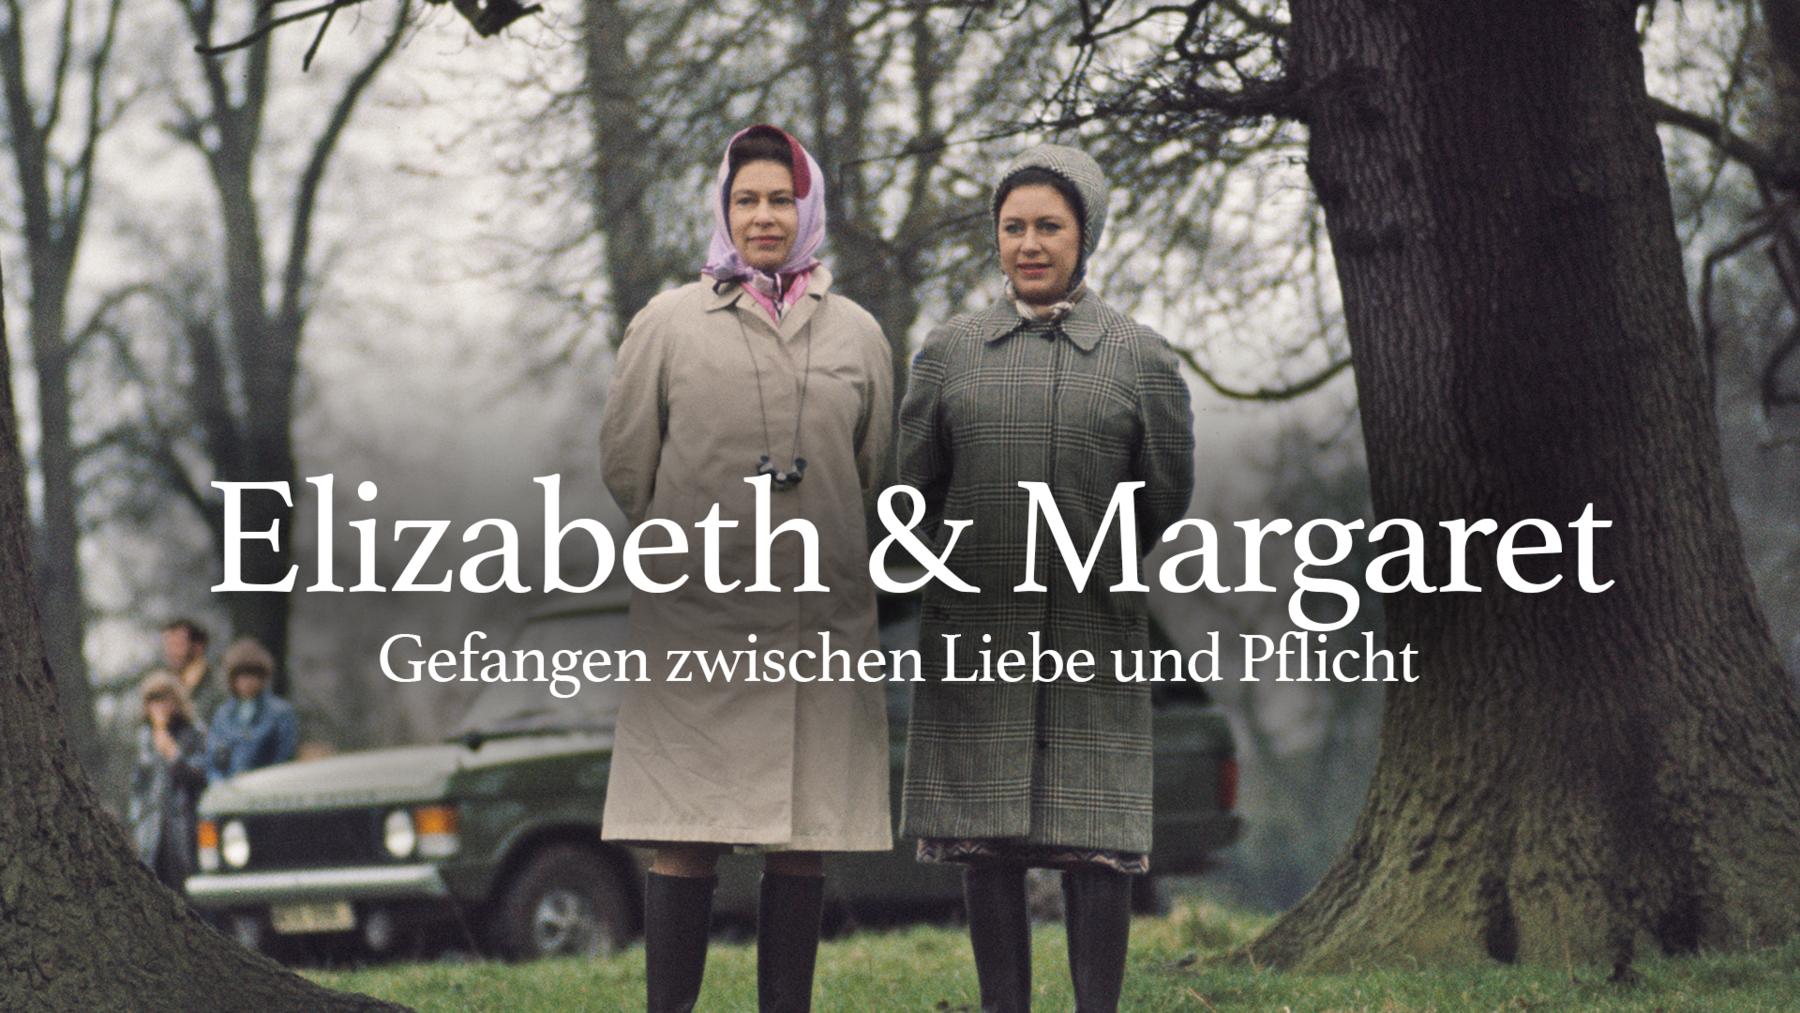 Elizabeth & Margaret: Gefangen zwischen Liebe und Pflicht